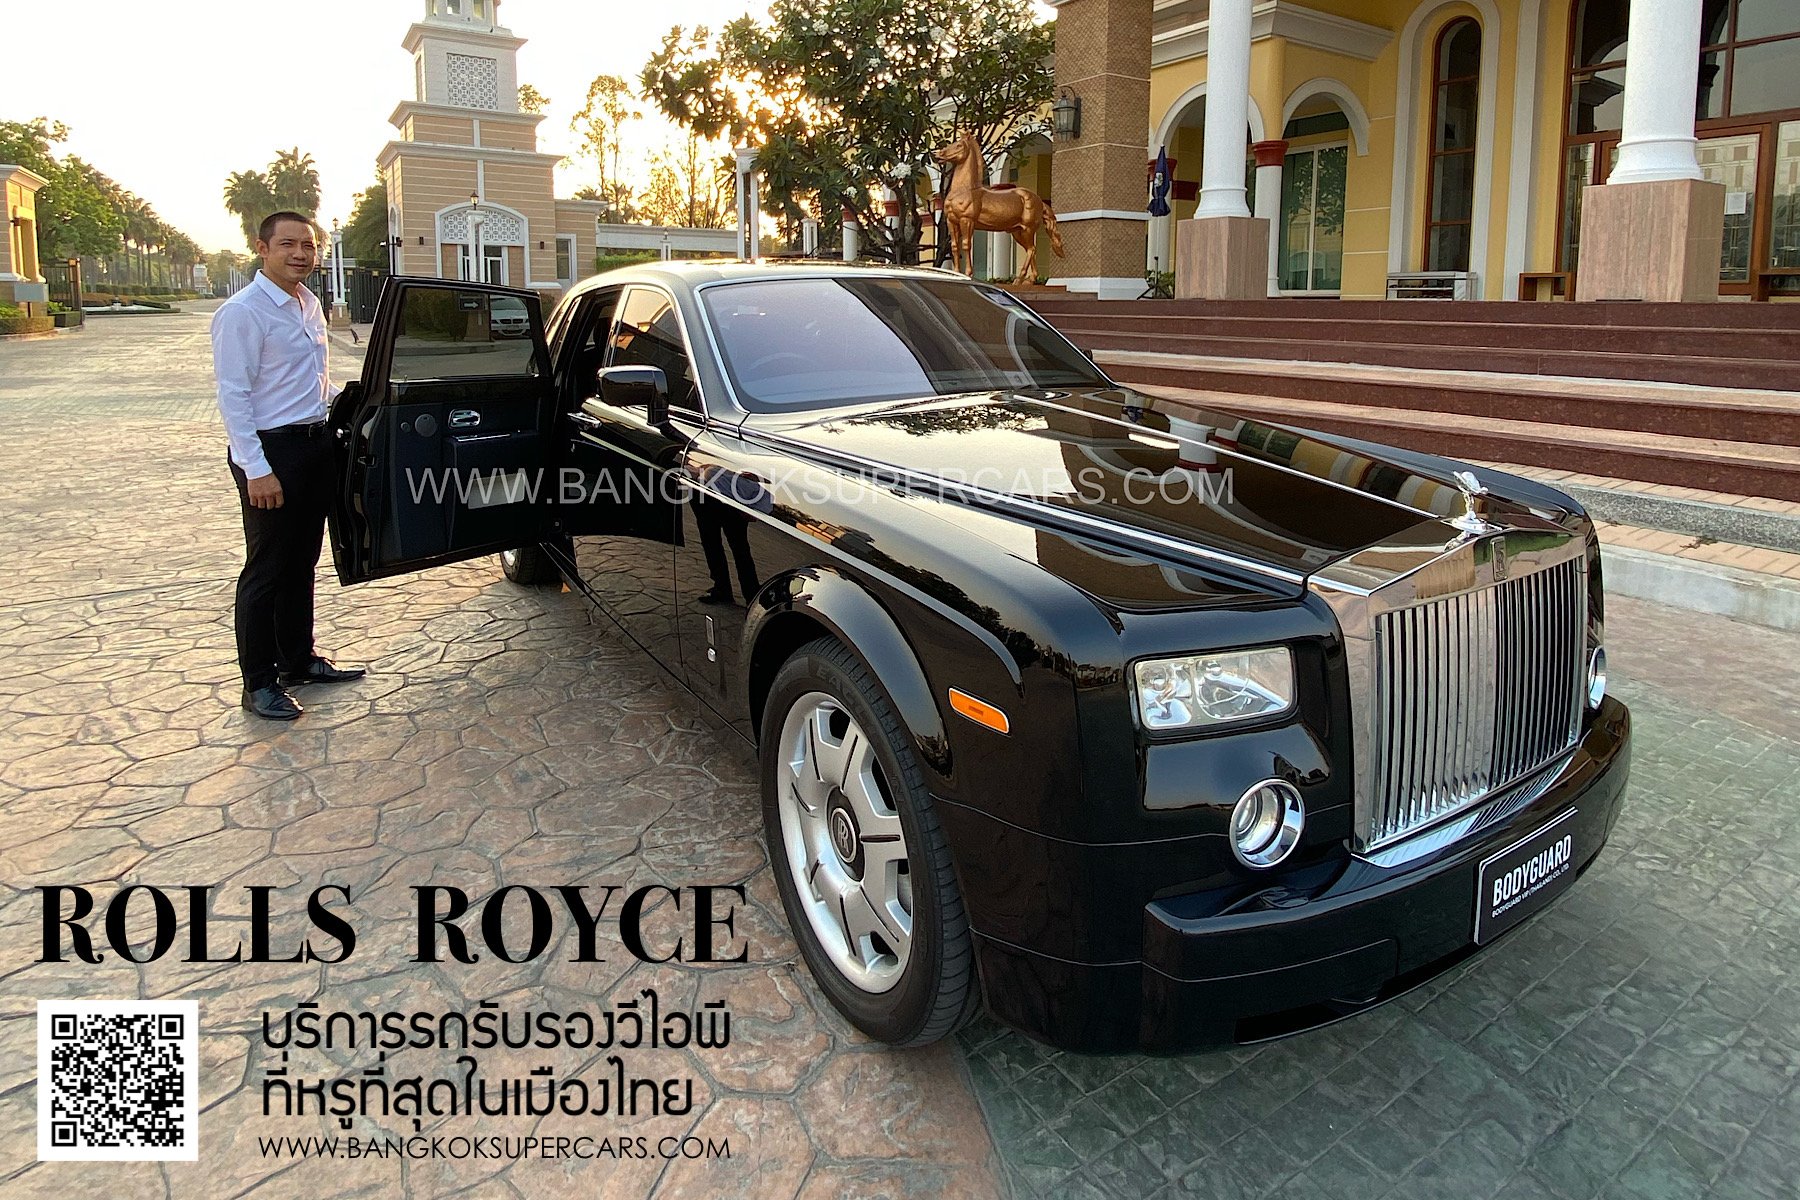 RollsRoyce đem tới Triển lãm Bangkok 2019 đầy đủ danh mục sản phẩm của  thương hiệu